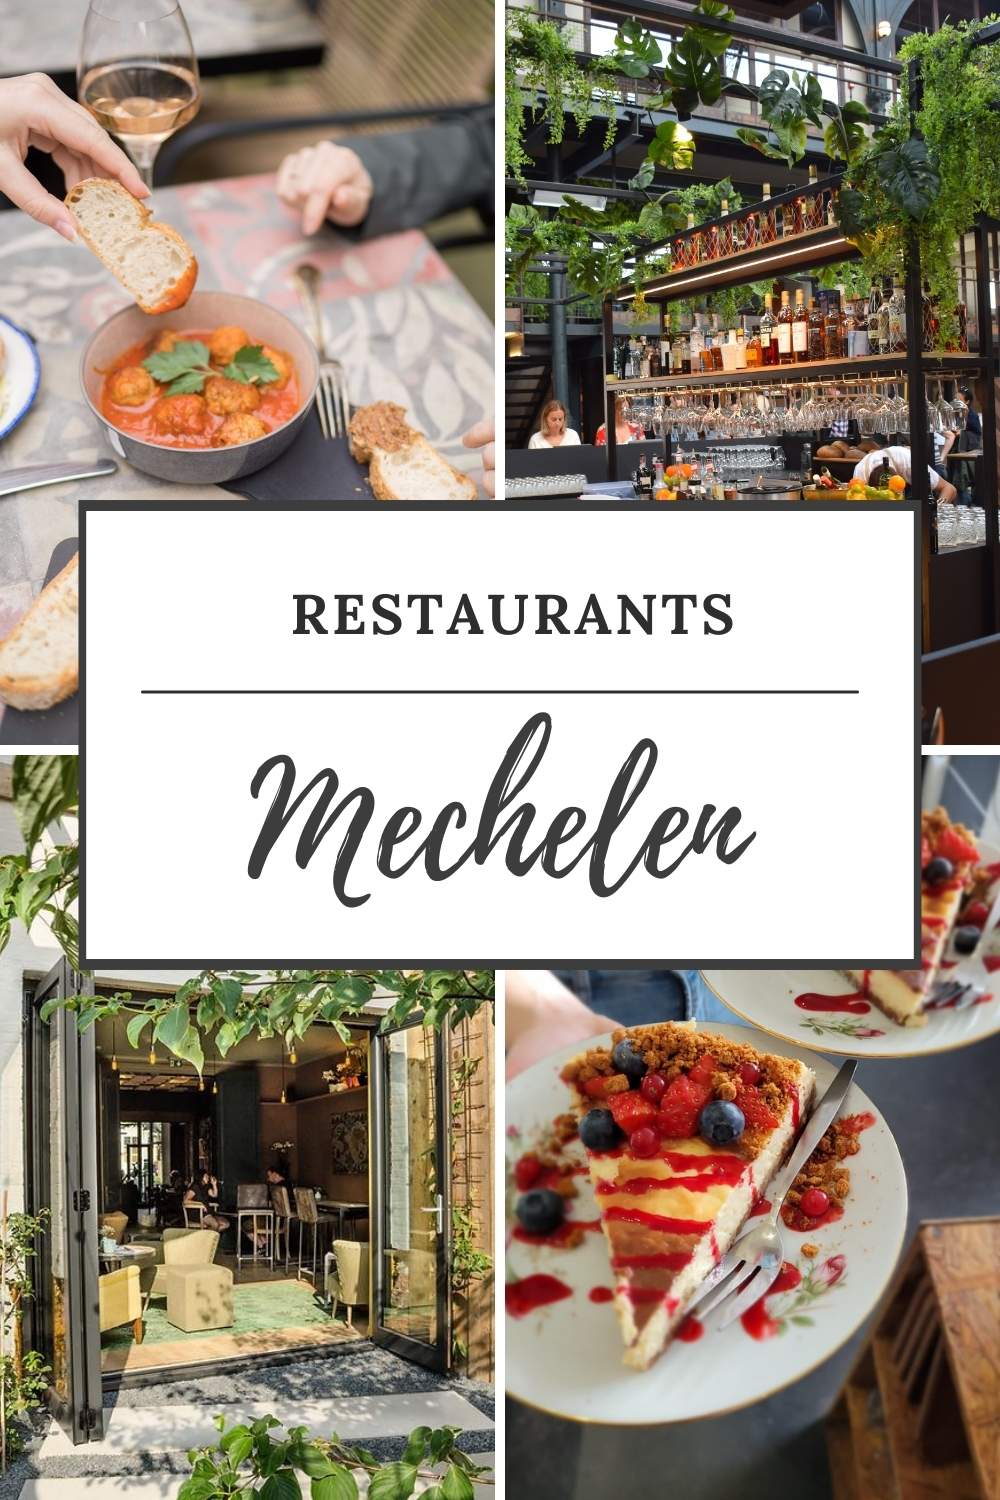 Restaurants Mechelen: leuk uit eten in Mechelen? Ontdek de leukste restaurants in Mechelen | Mooistestedentrips.nl